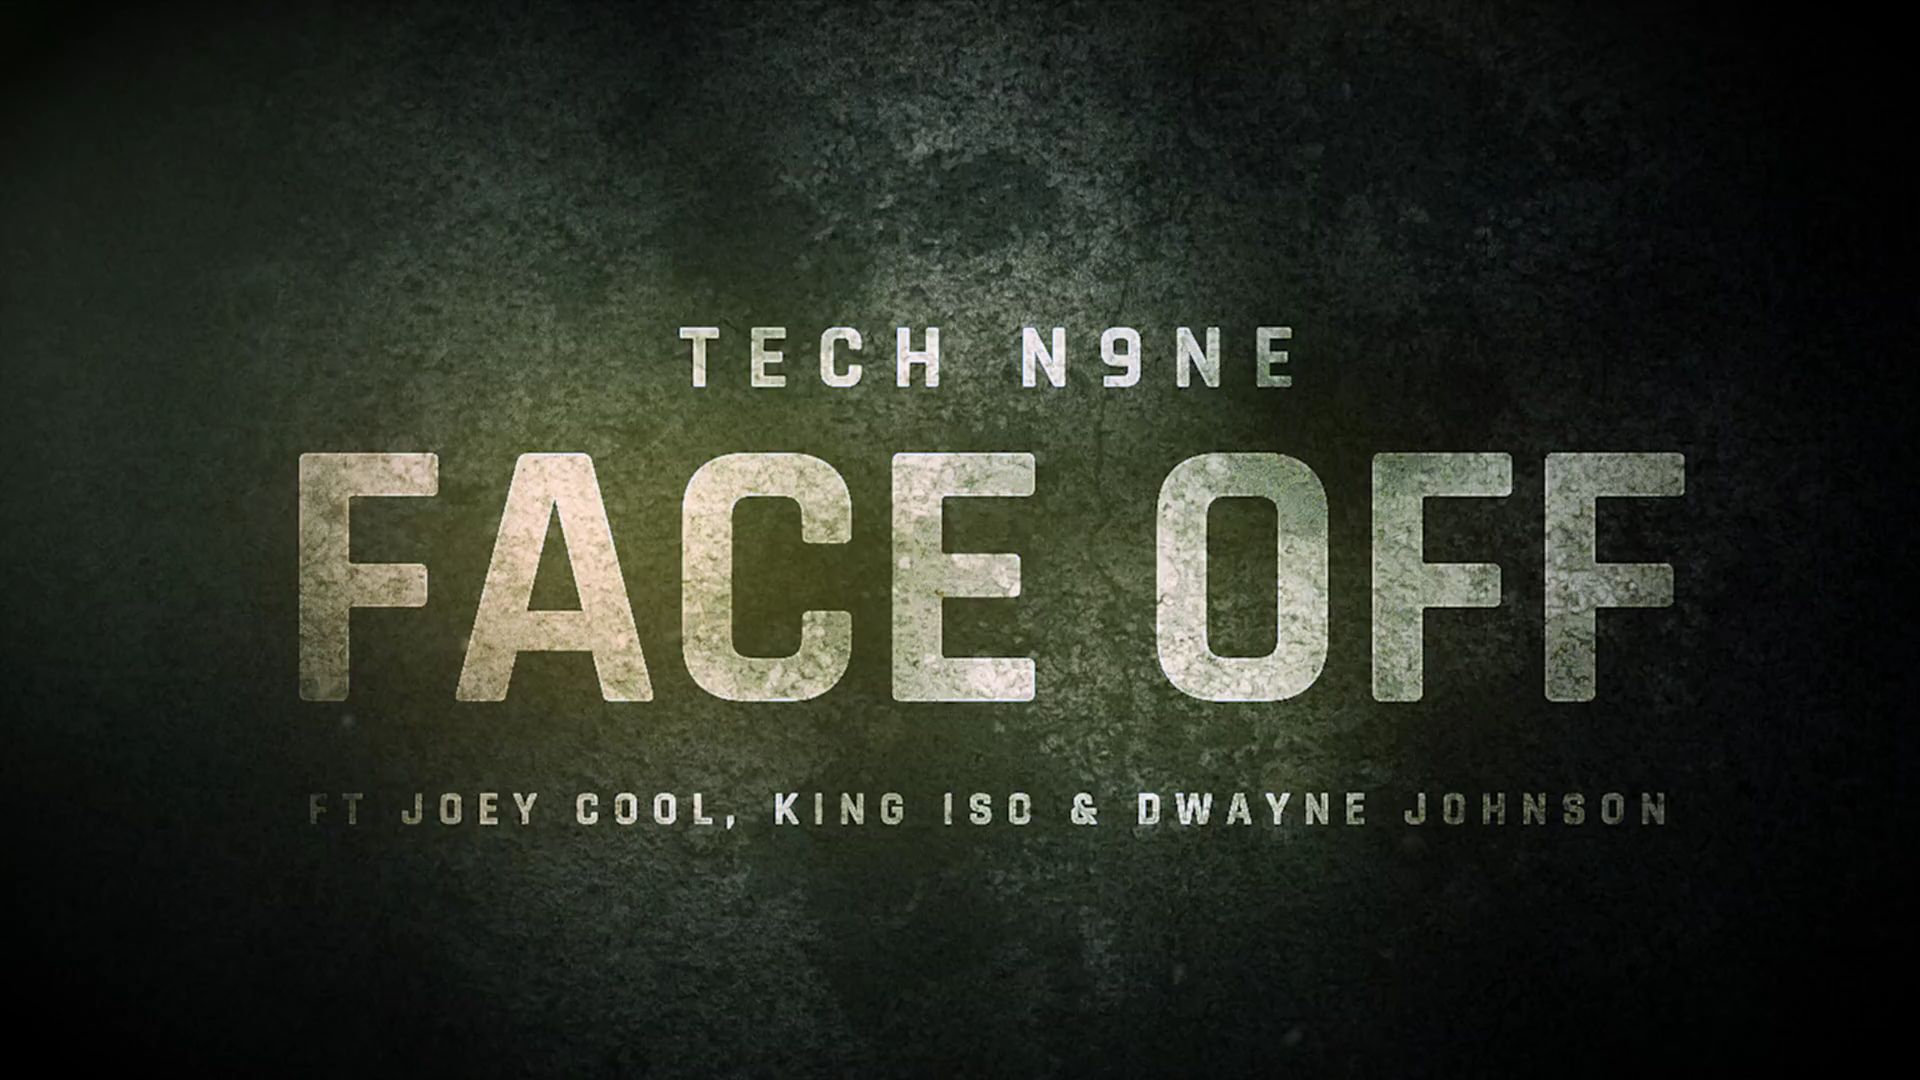 Tech N9ne - Face Off (feat. Joey Cool, King Iso & Dwayne Johnson)